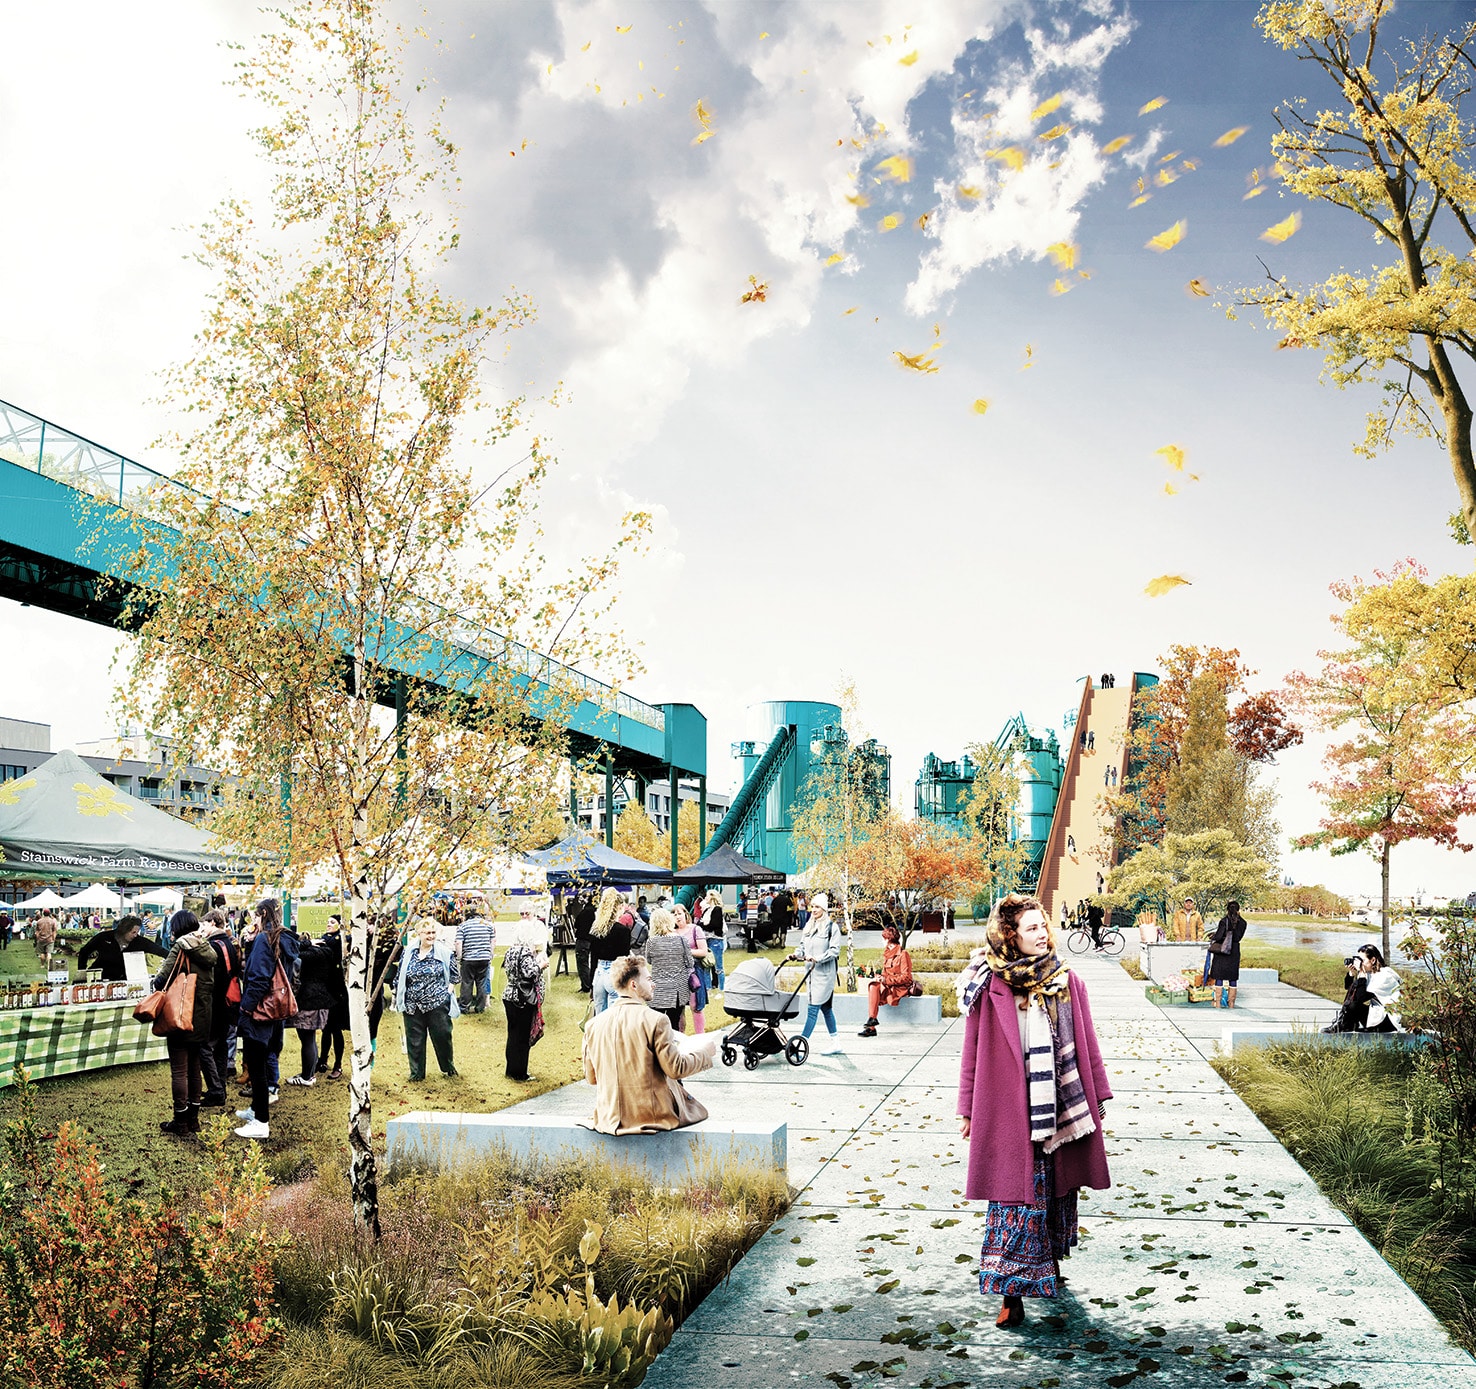 Der Klimapark soll Stadt und Fluss wieder mehr miteinander vereinen. Bildquelle: Copyright OMGEVING